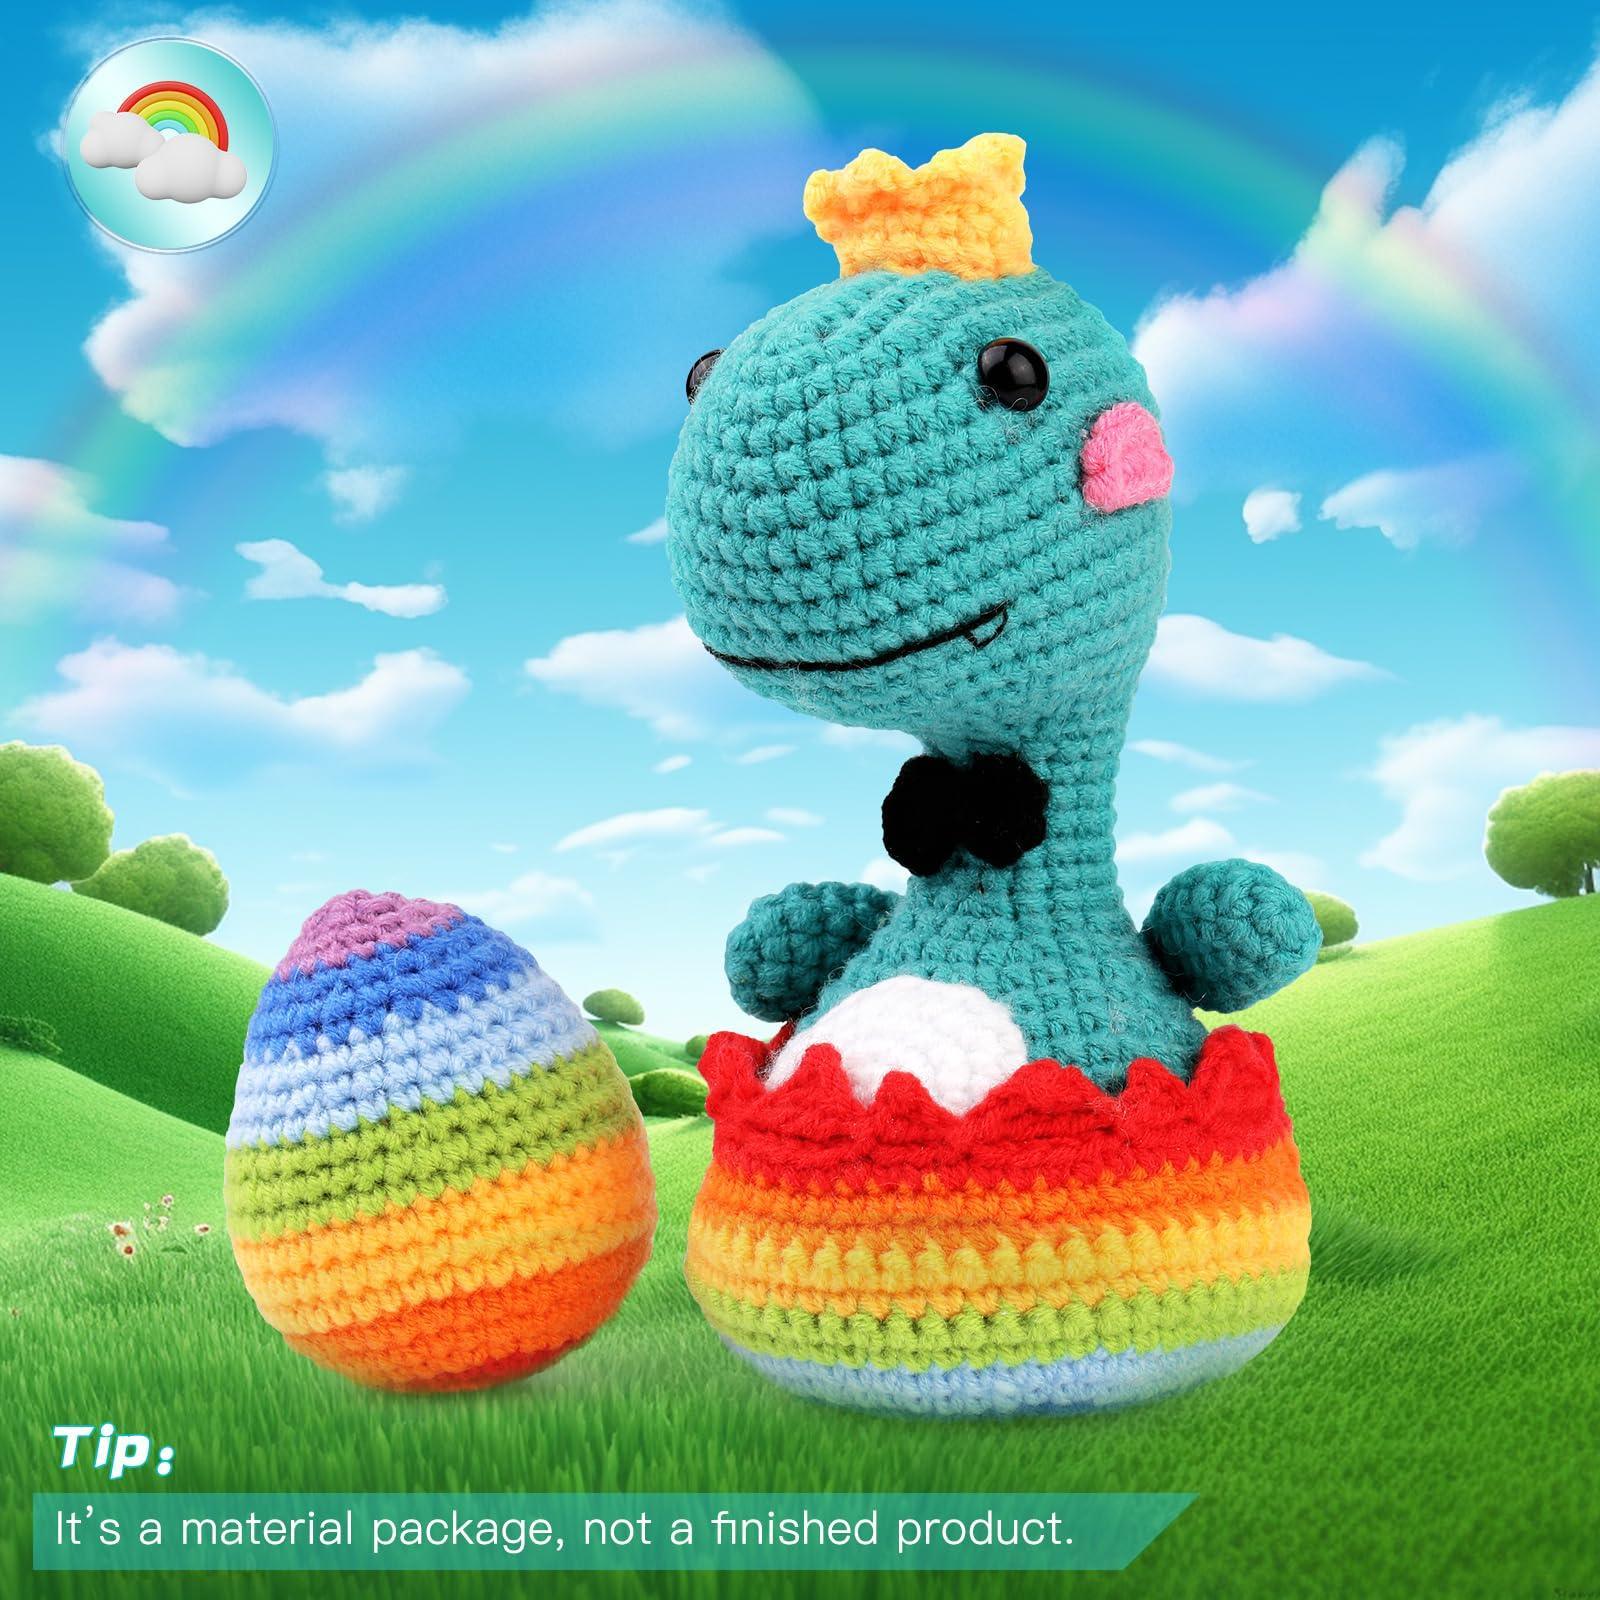  Dinosaur Animal Crochet Kit for Beginners, Crocheting